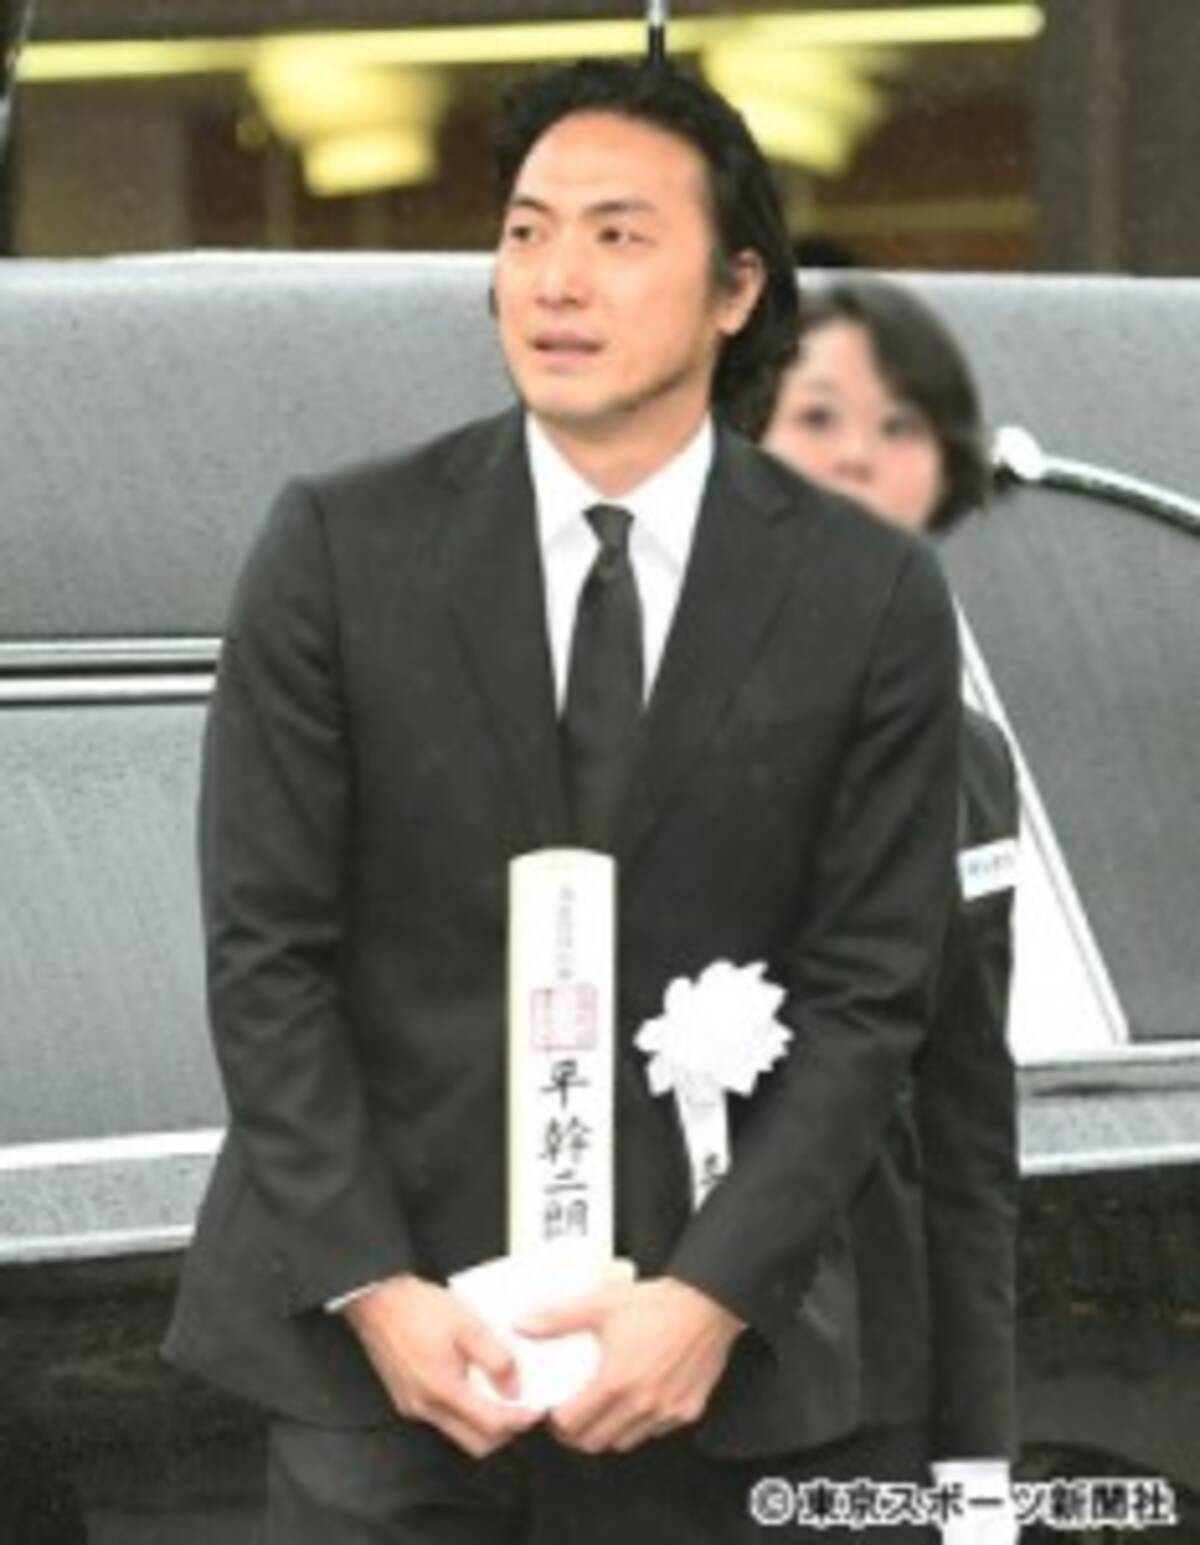 平幹二朗さん告別式で長男 岳大が 最後の会話 を回想 16年10月29日 エキサイトニュース